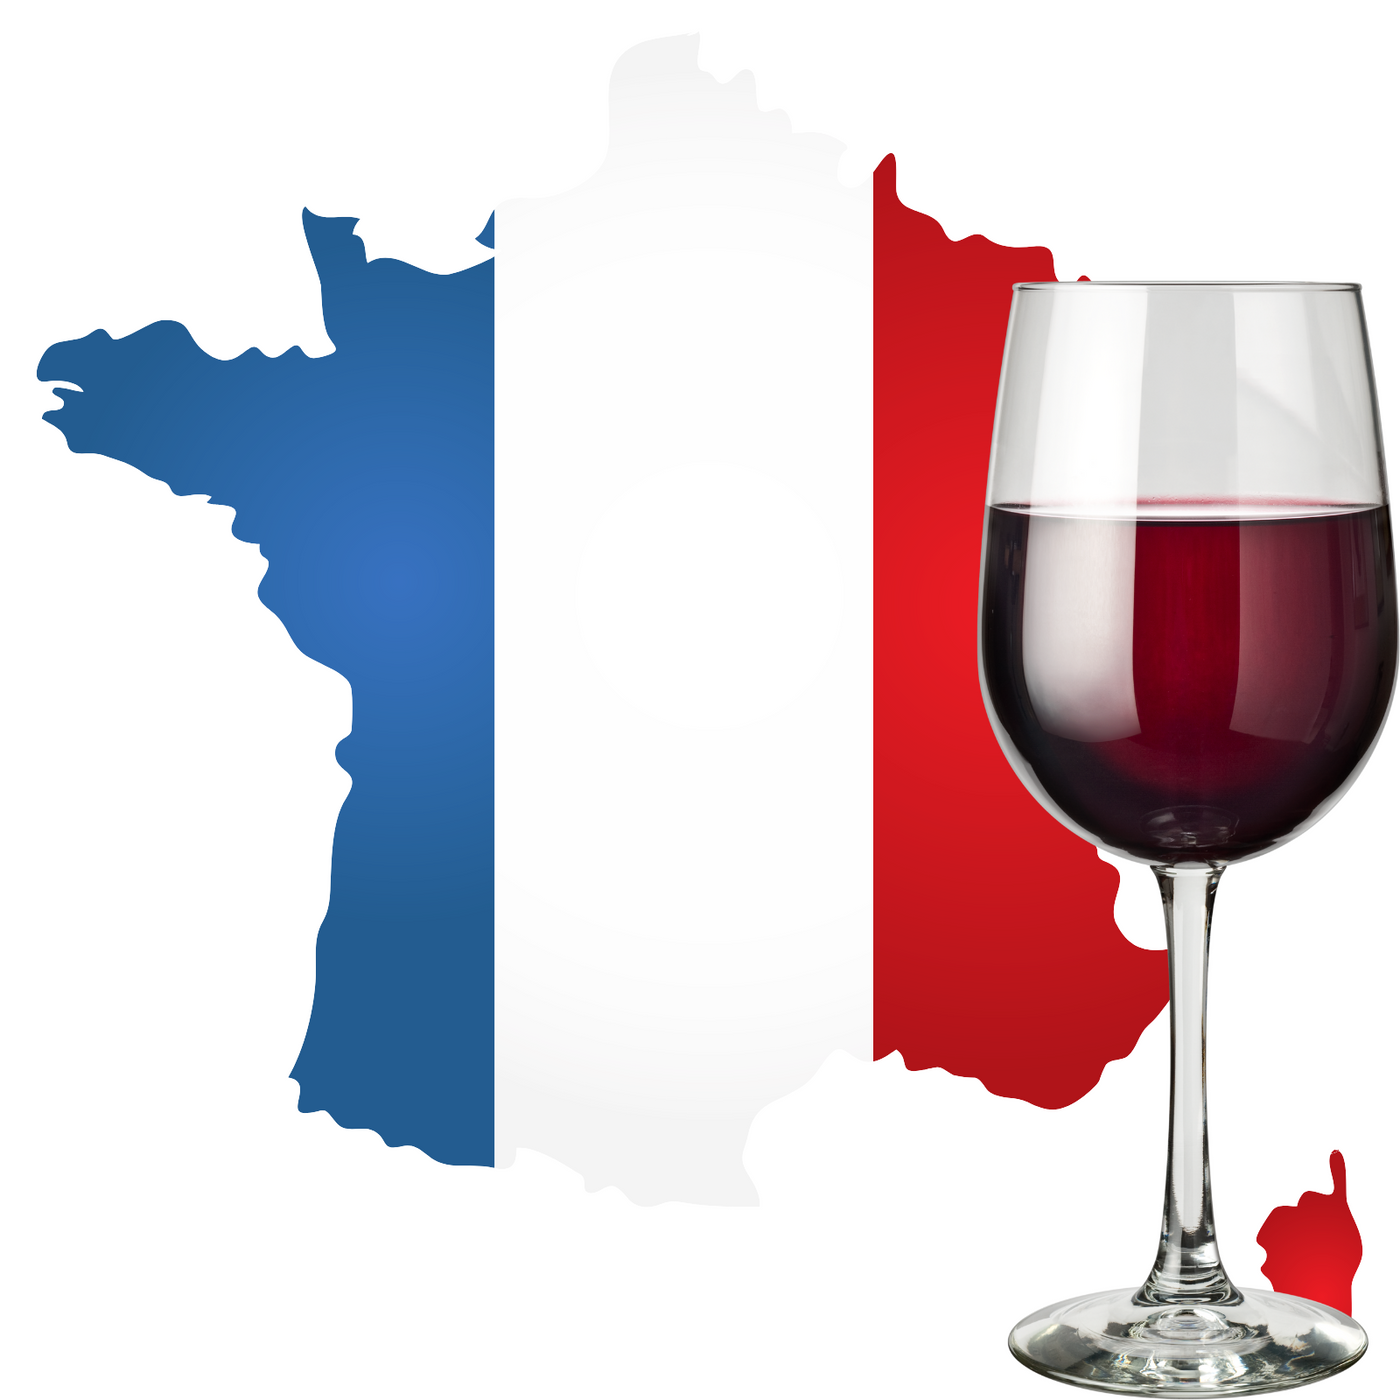 Franse rode wijn bestellen bij Flesjewijn.com